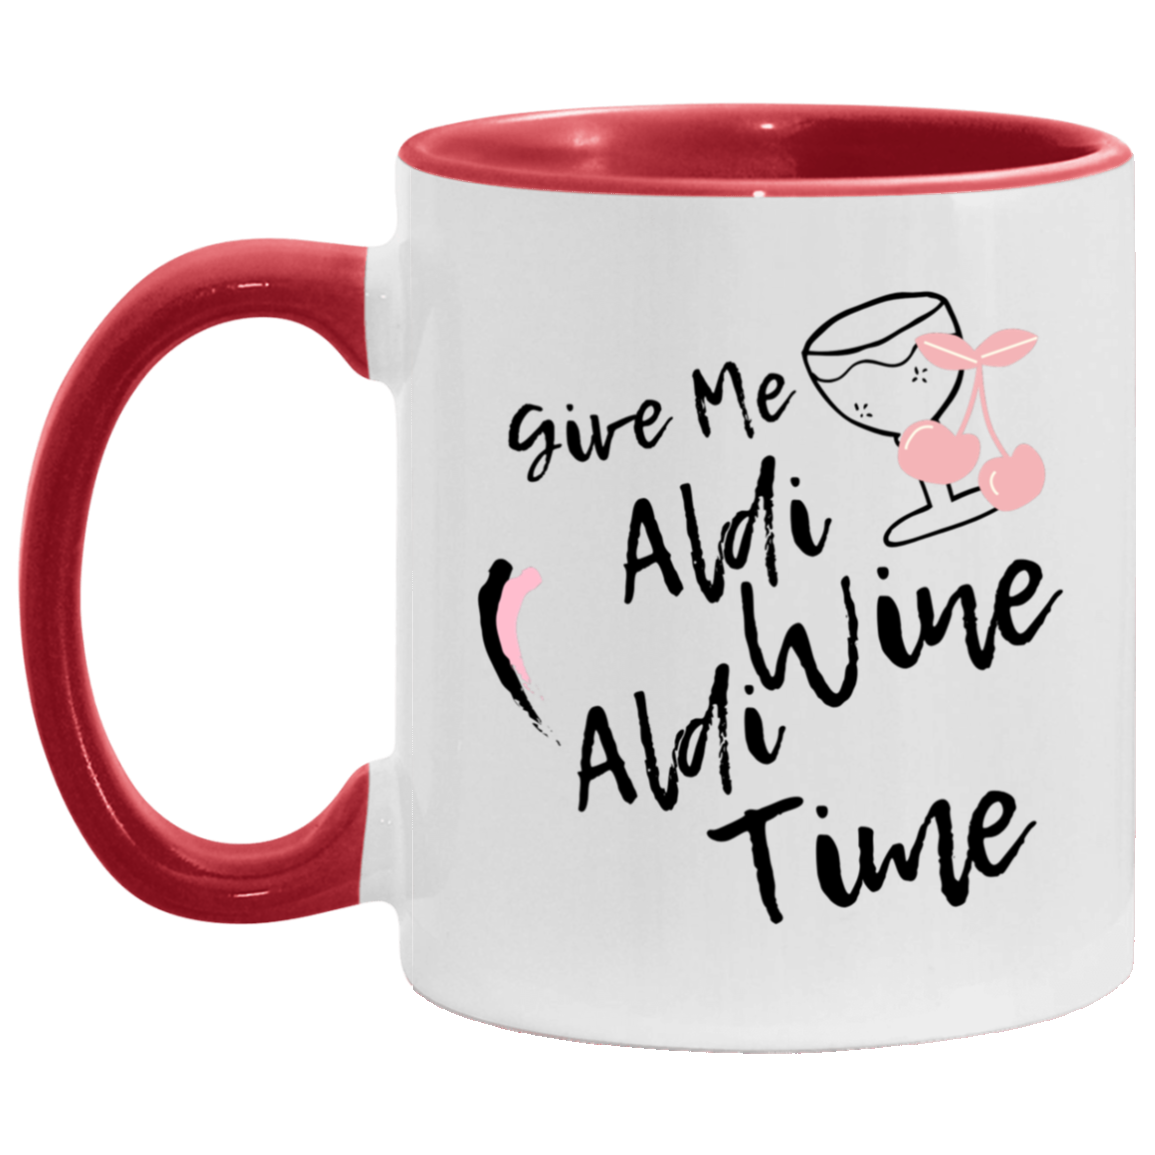 Aldi Wine Aldi Time Accent Mug